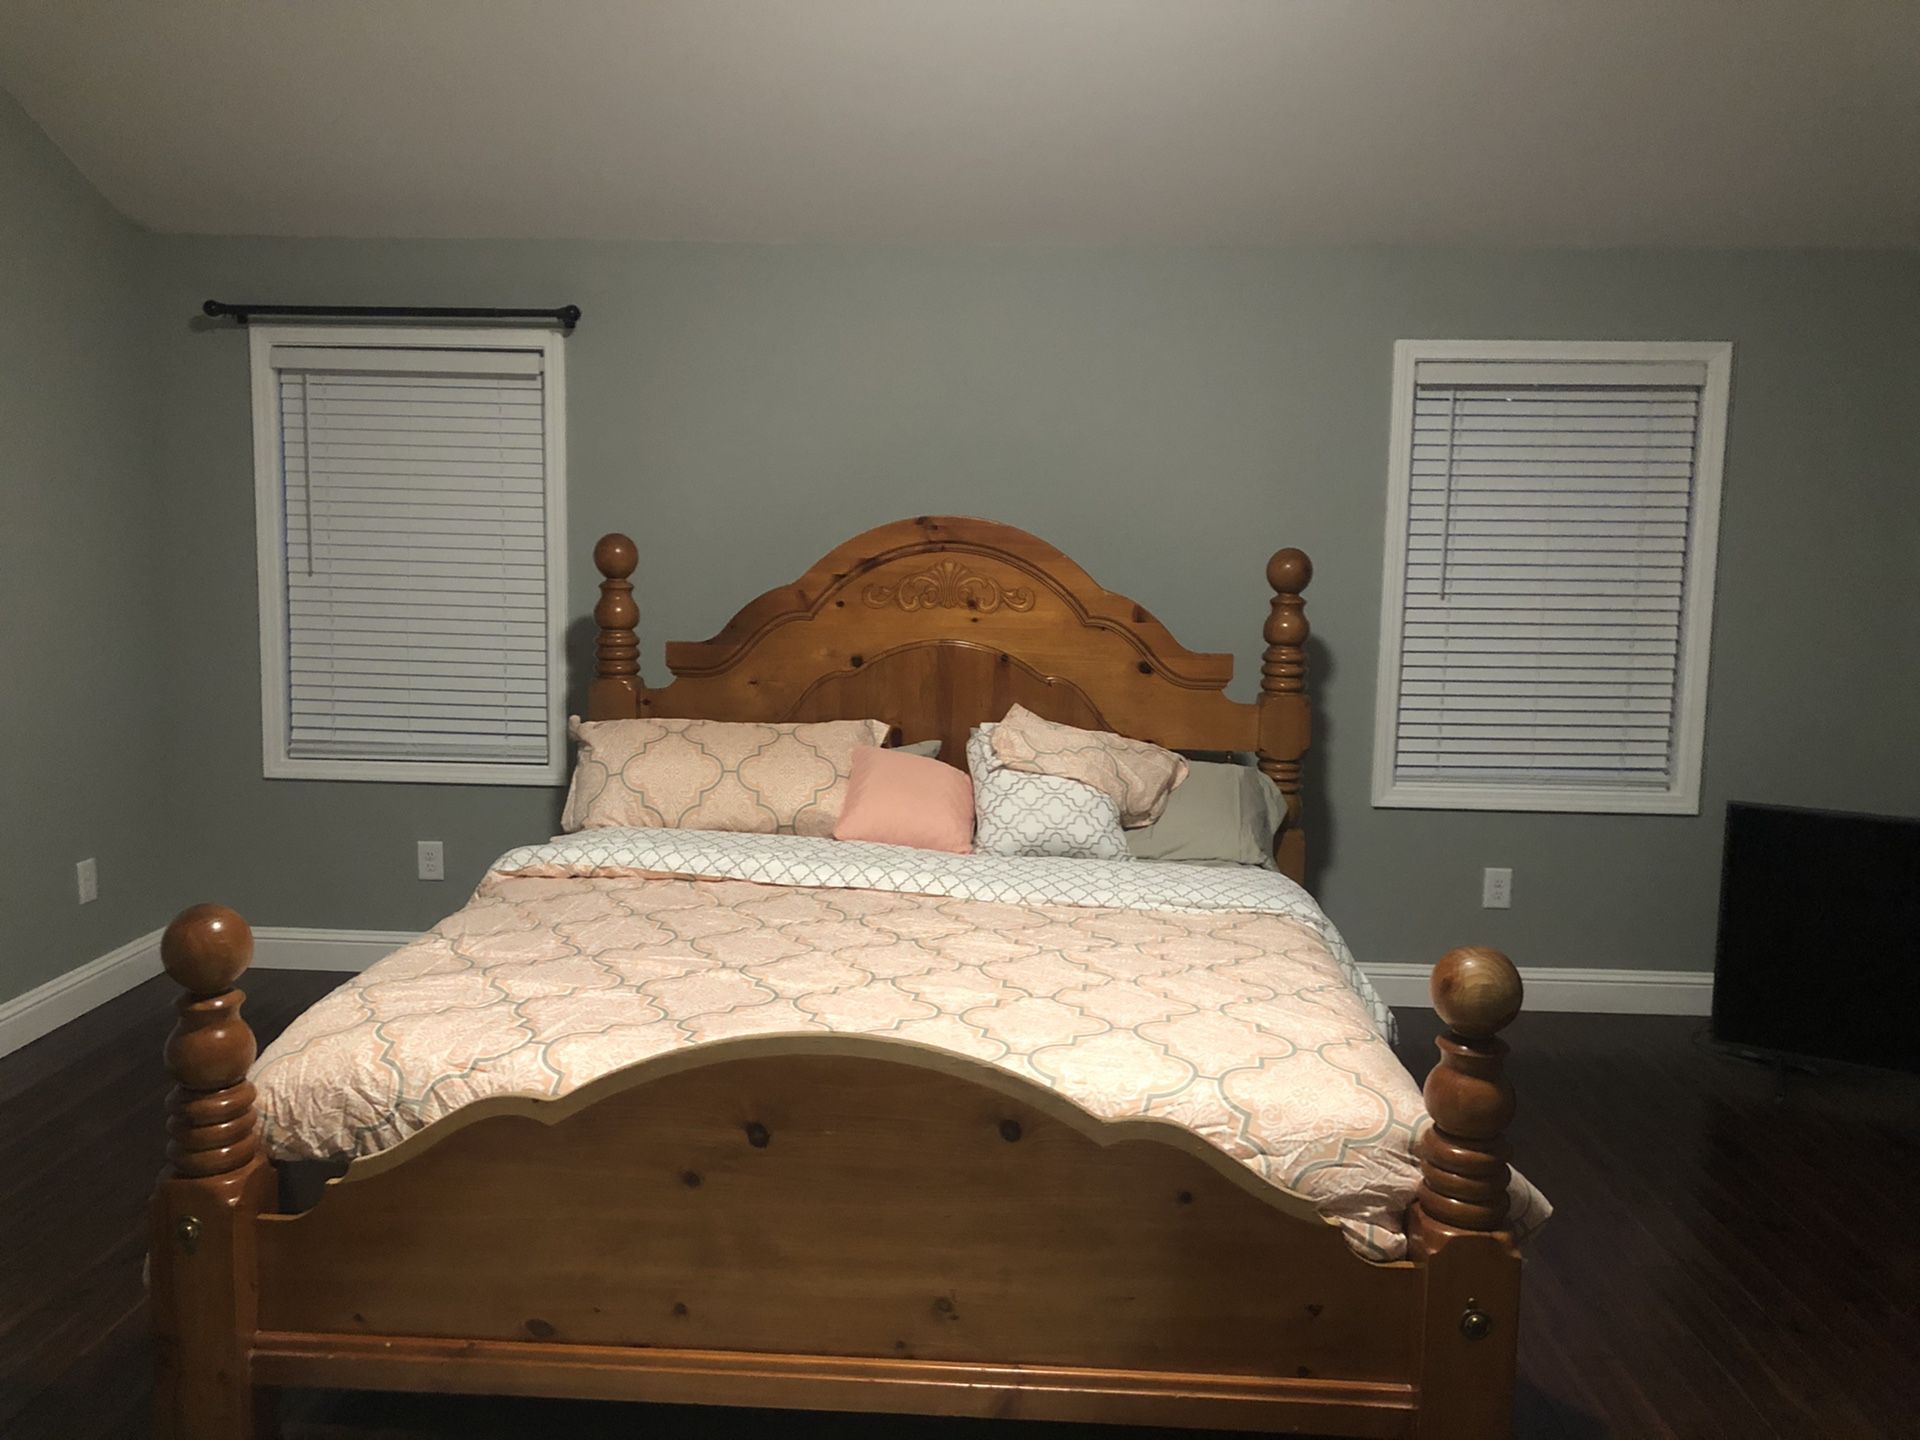 Bedroom Set for Sale